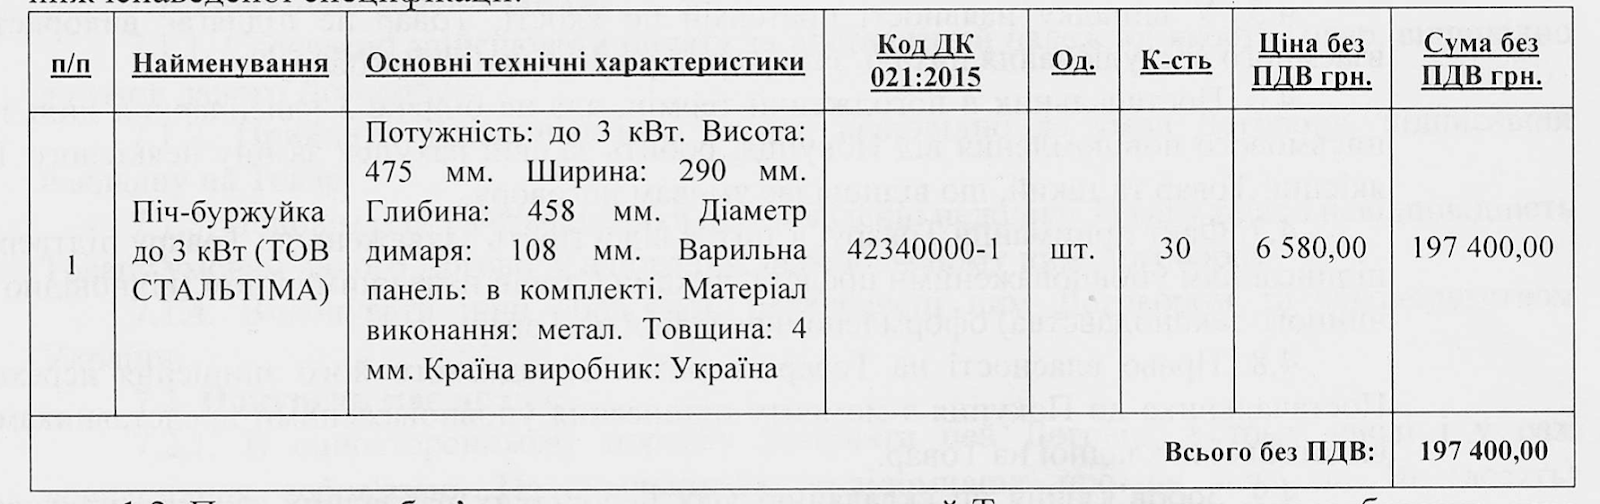 Запорожская область потратила 3,7 миллиона гривен на 